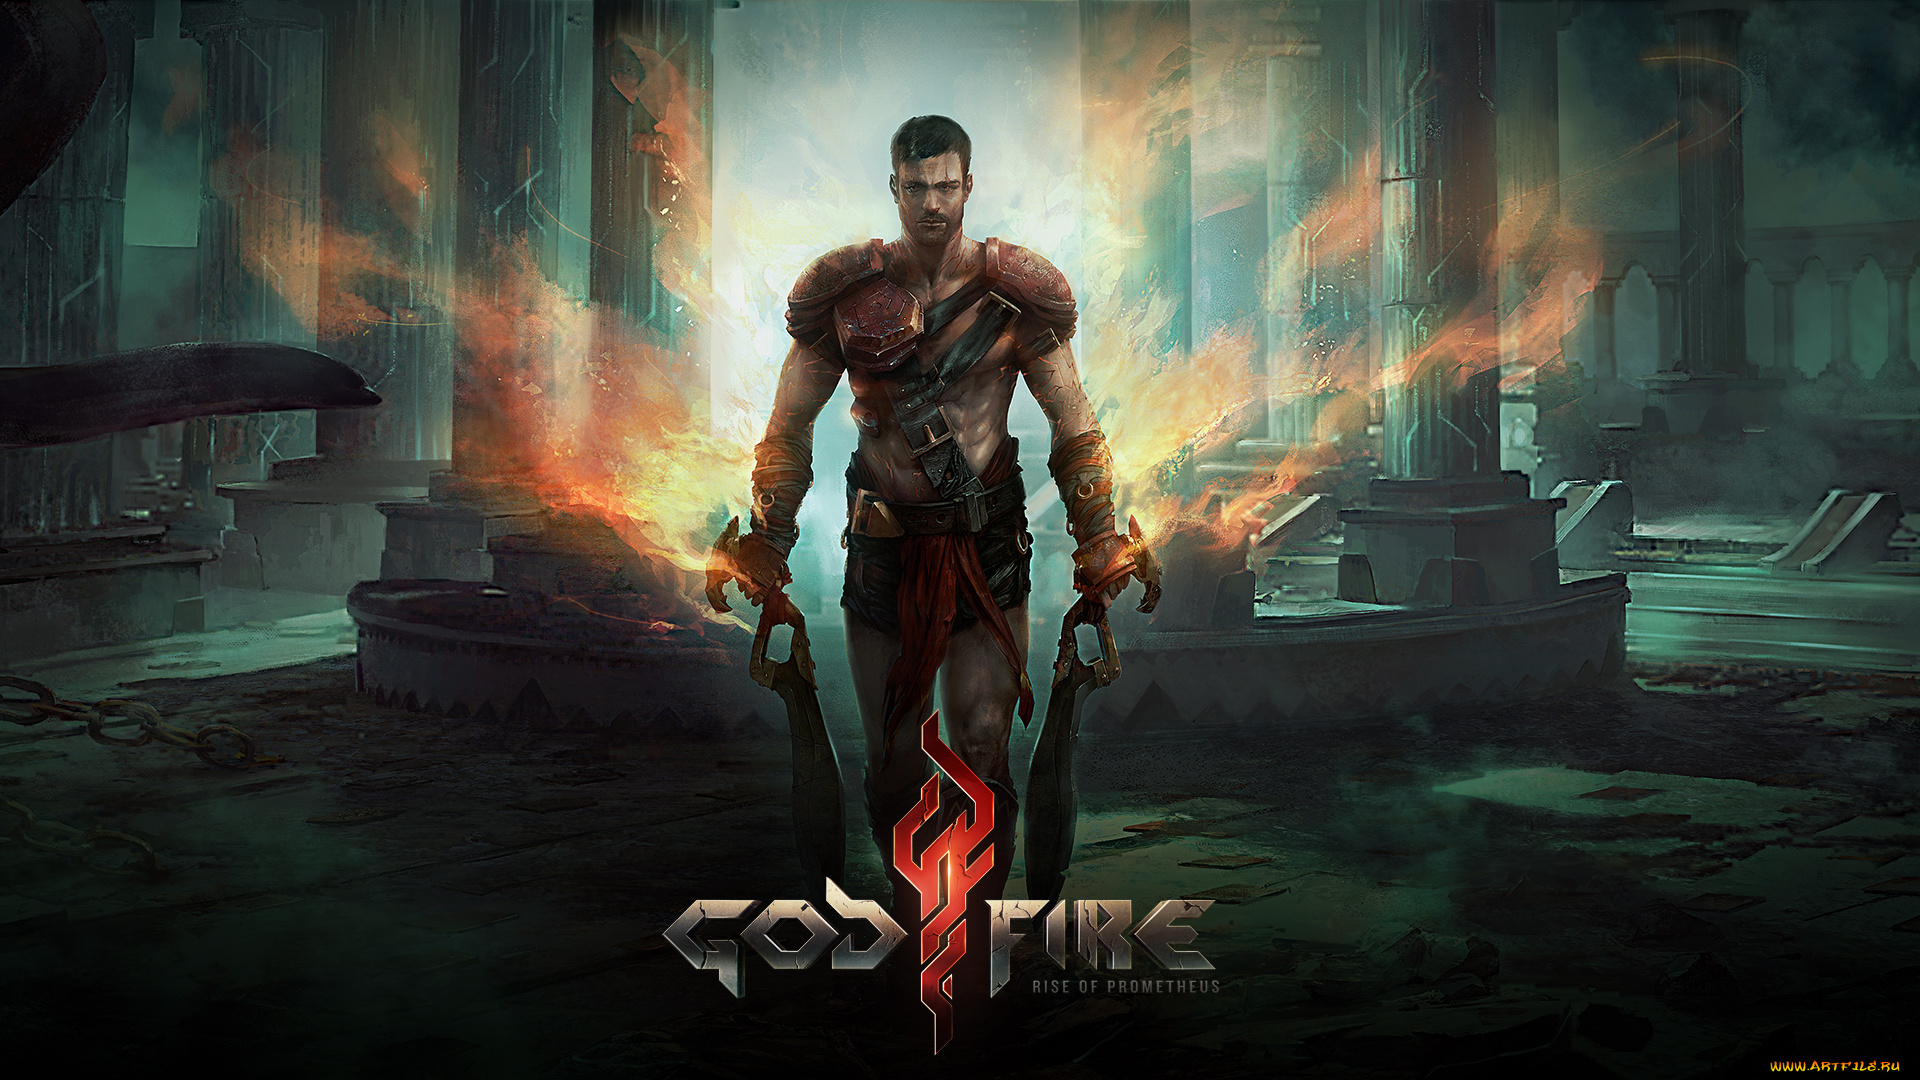 godfire, rise, of, prometheus, видео, игры, огонь, меч, доспехи, мужчина, колонны, развалины, ремень, цепь, воин